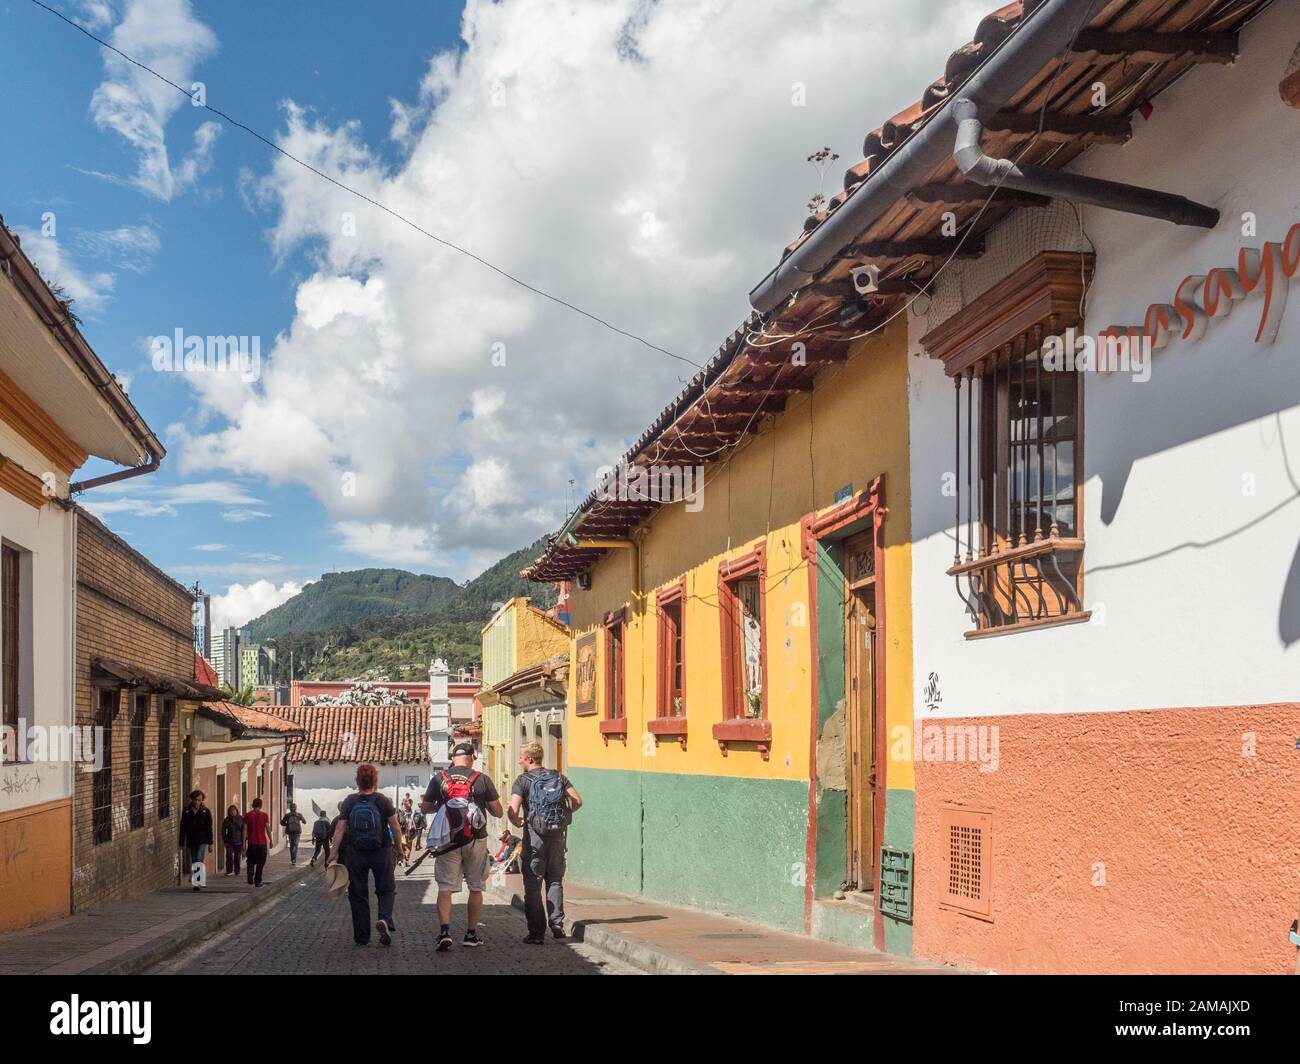 Bogota, Colombie - 12 septembre 2019: Rue de Bogota avec maisons coloniales colorées et vue sur la montagne en arrière-plan, le quartier de la Candelaria. Banque D'Images